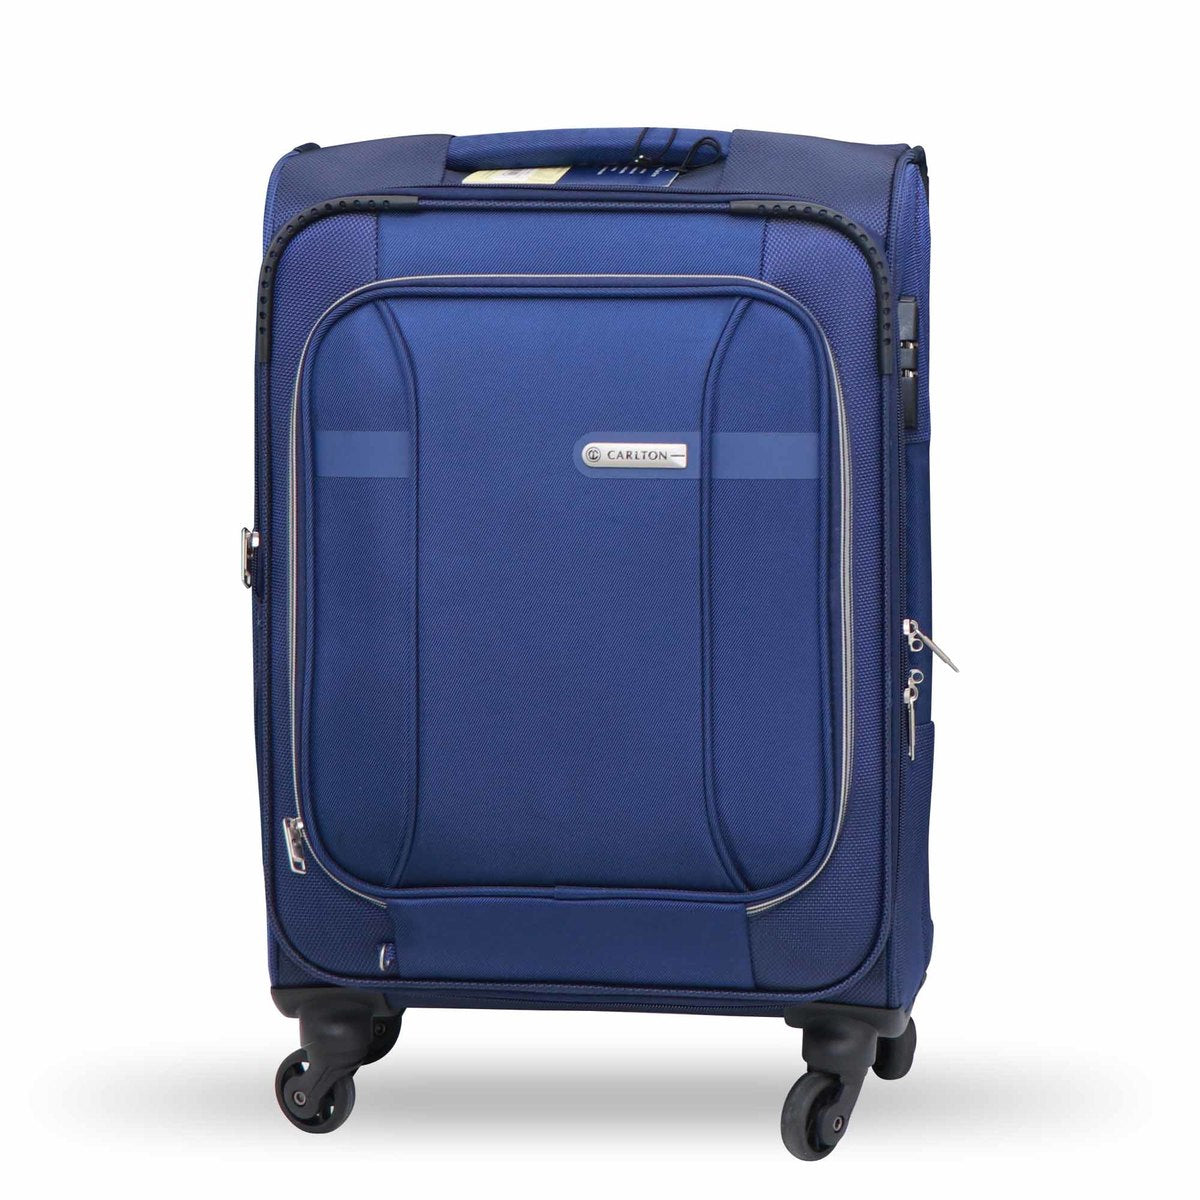 Carlton Luggage Aston Spinner Cabin Trolley 56cm Blue